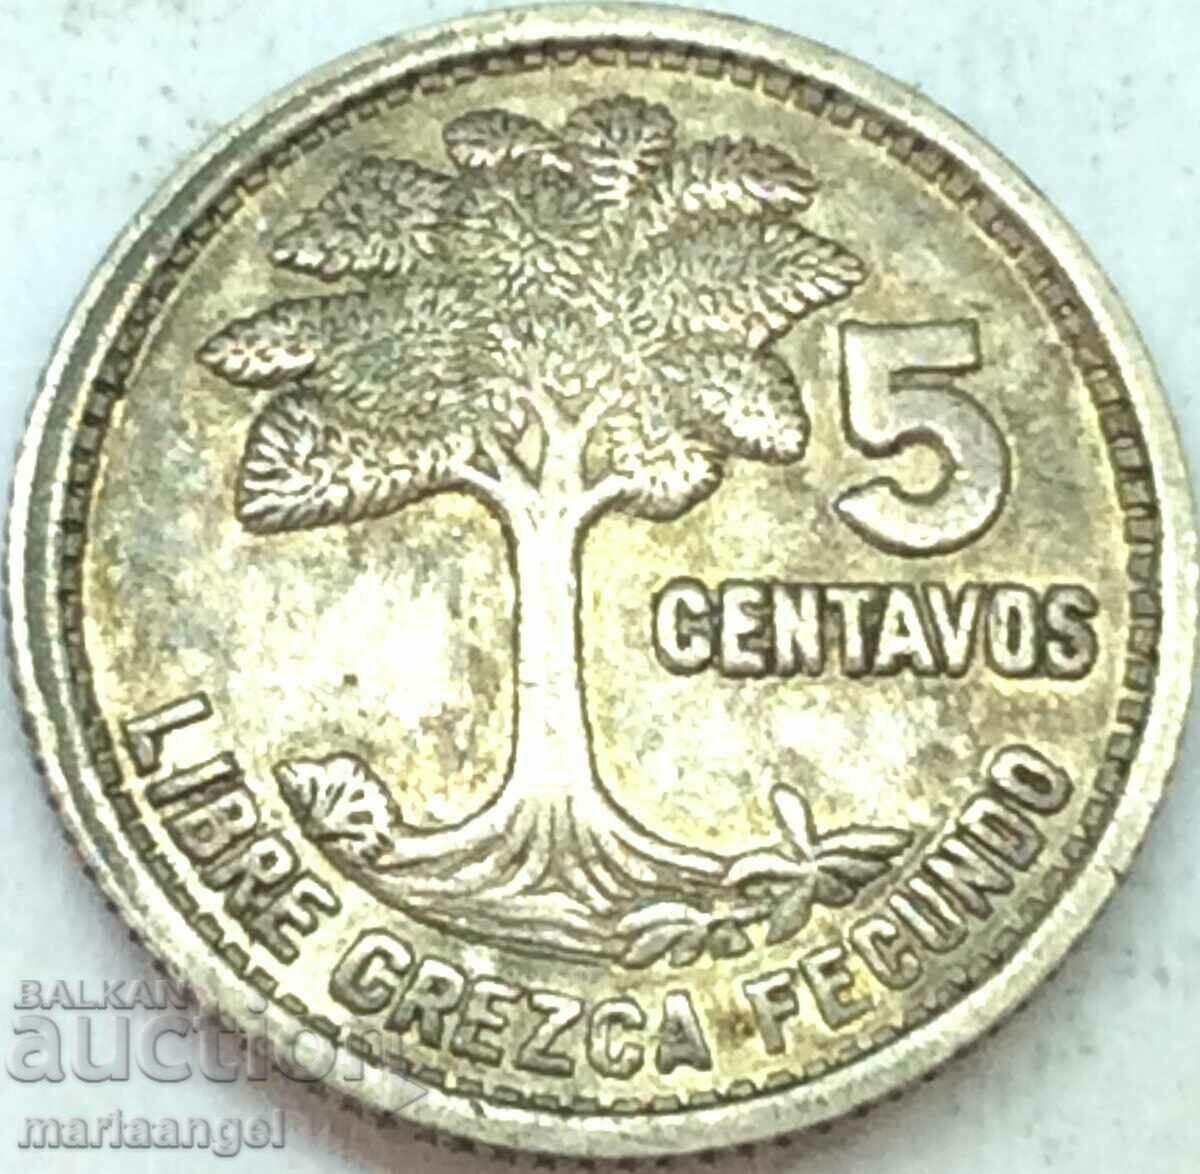 Guatemala 1952 5 cent centavos silver - quite rare